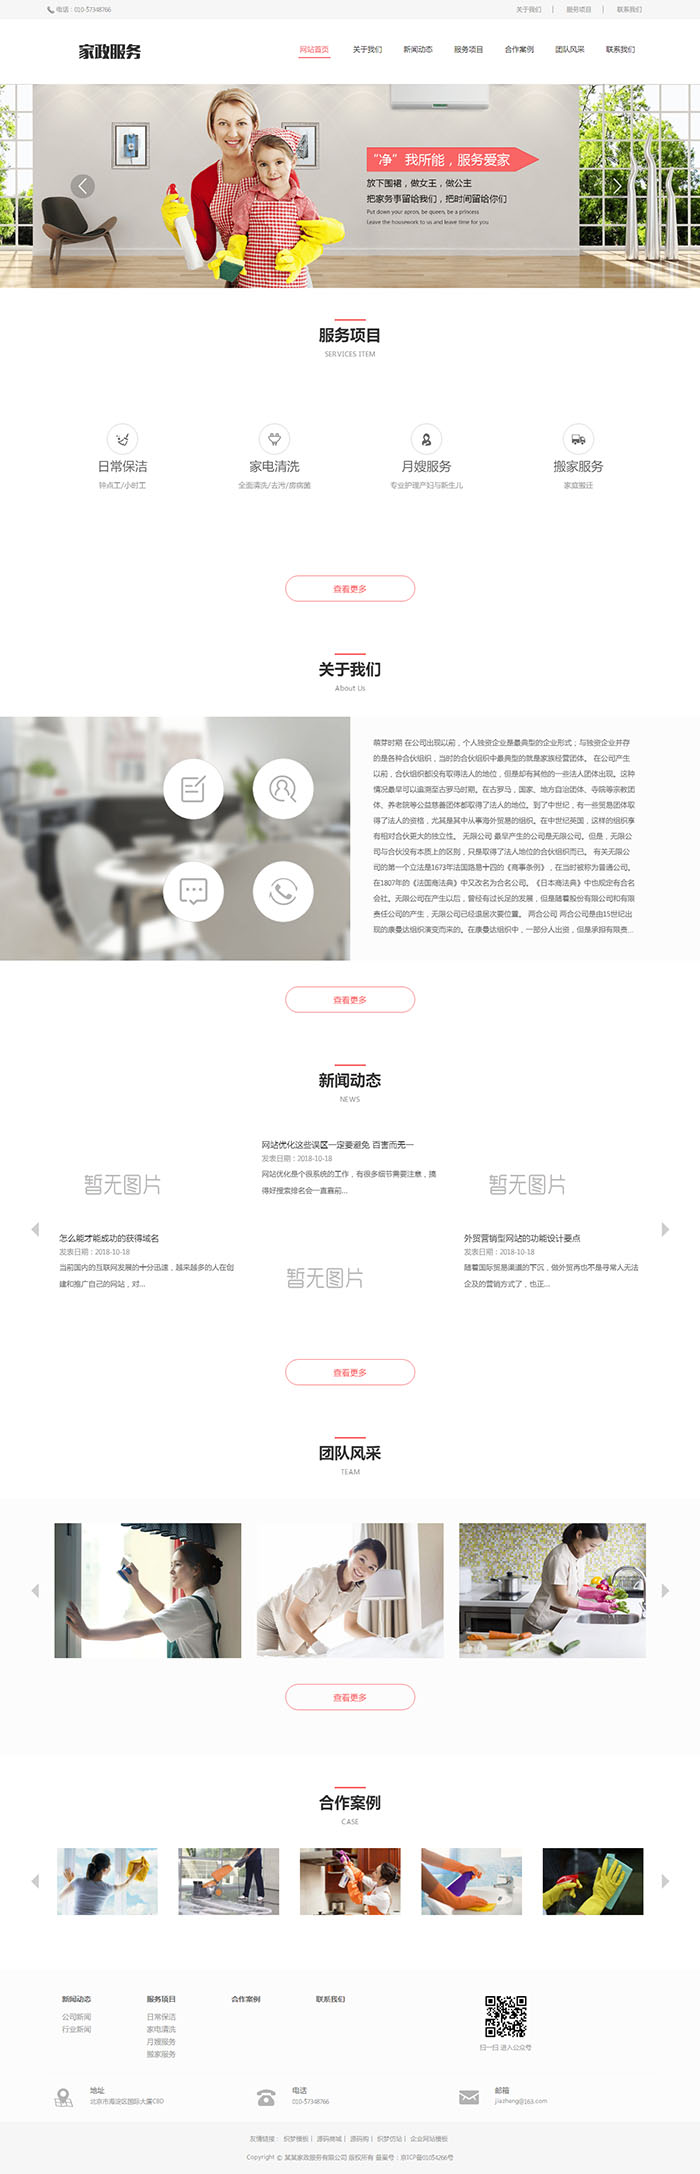 上海家政服务类网站制作